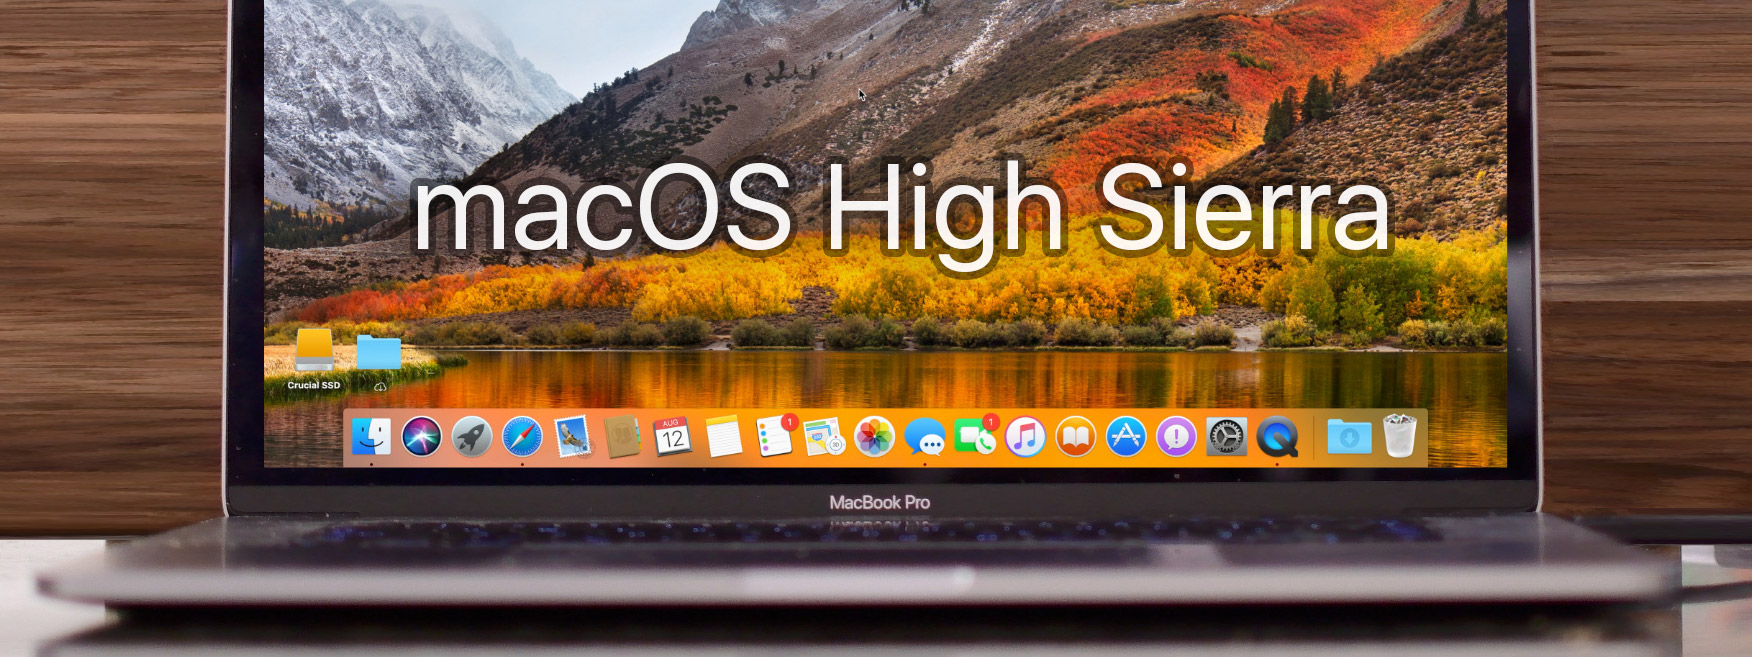 Đã có macOS High Sierra chính thức, mời anh em lên